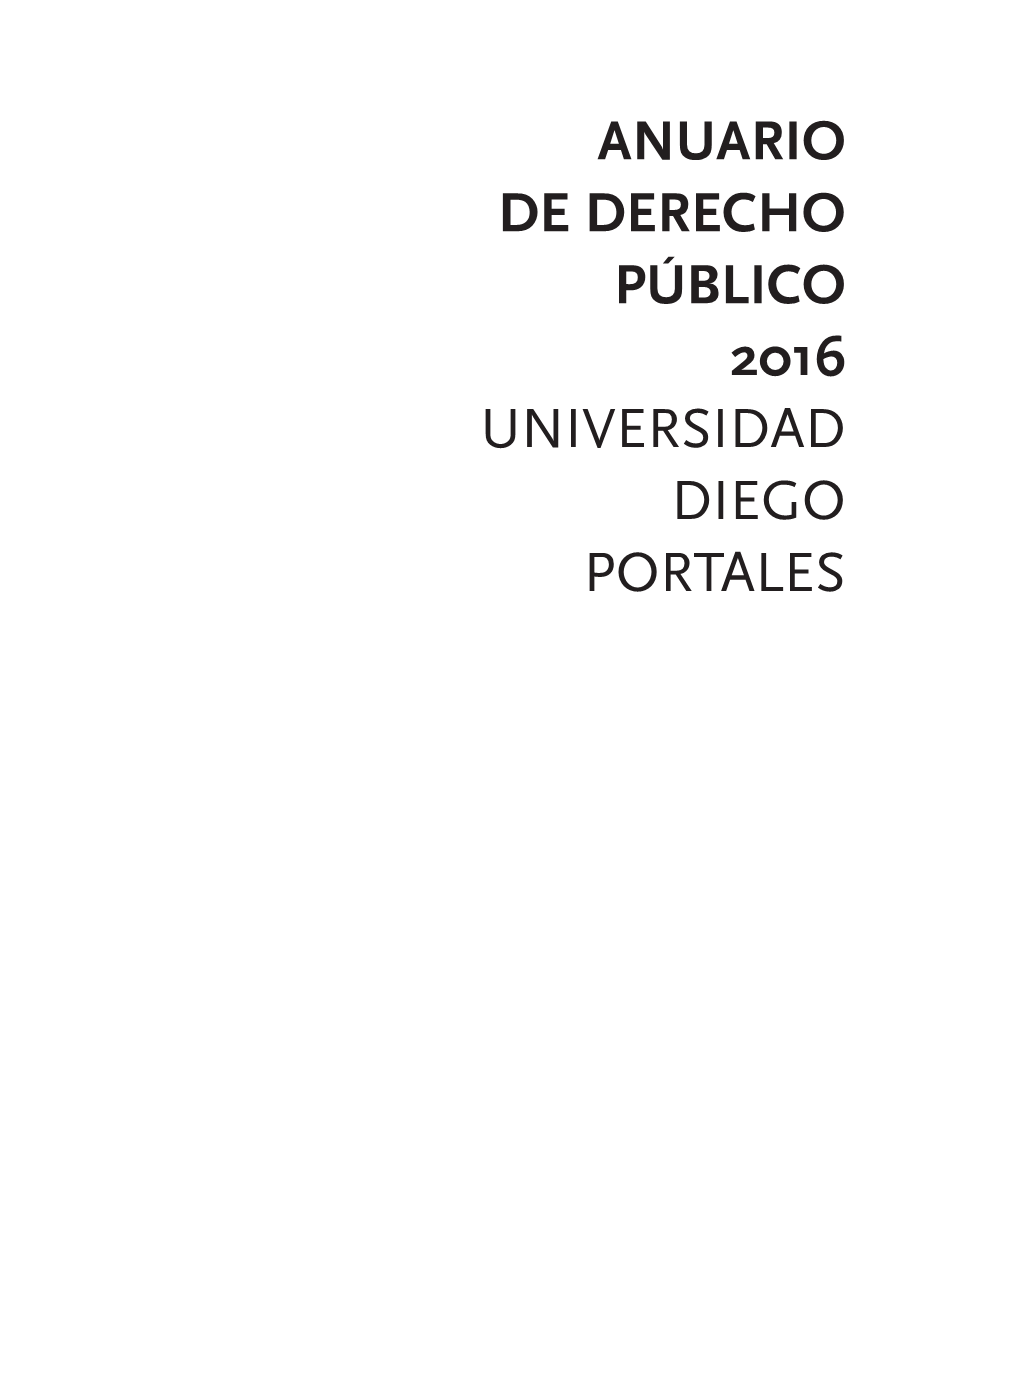 Anuario De Derecho Público 2016 Universidad Diego Portales Anuario De Derecho Público 2016